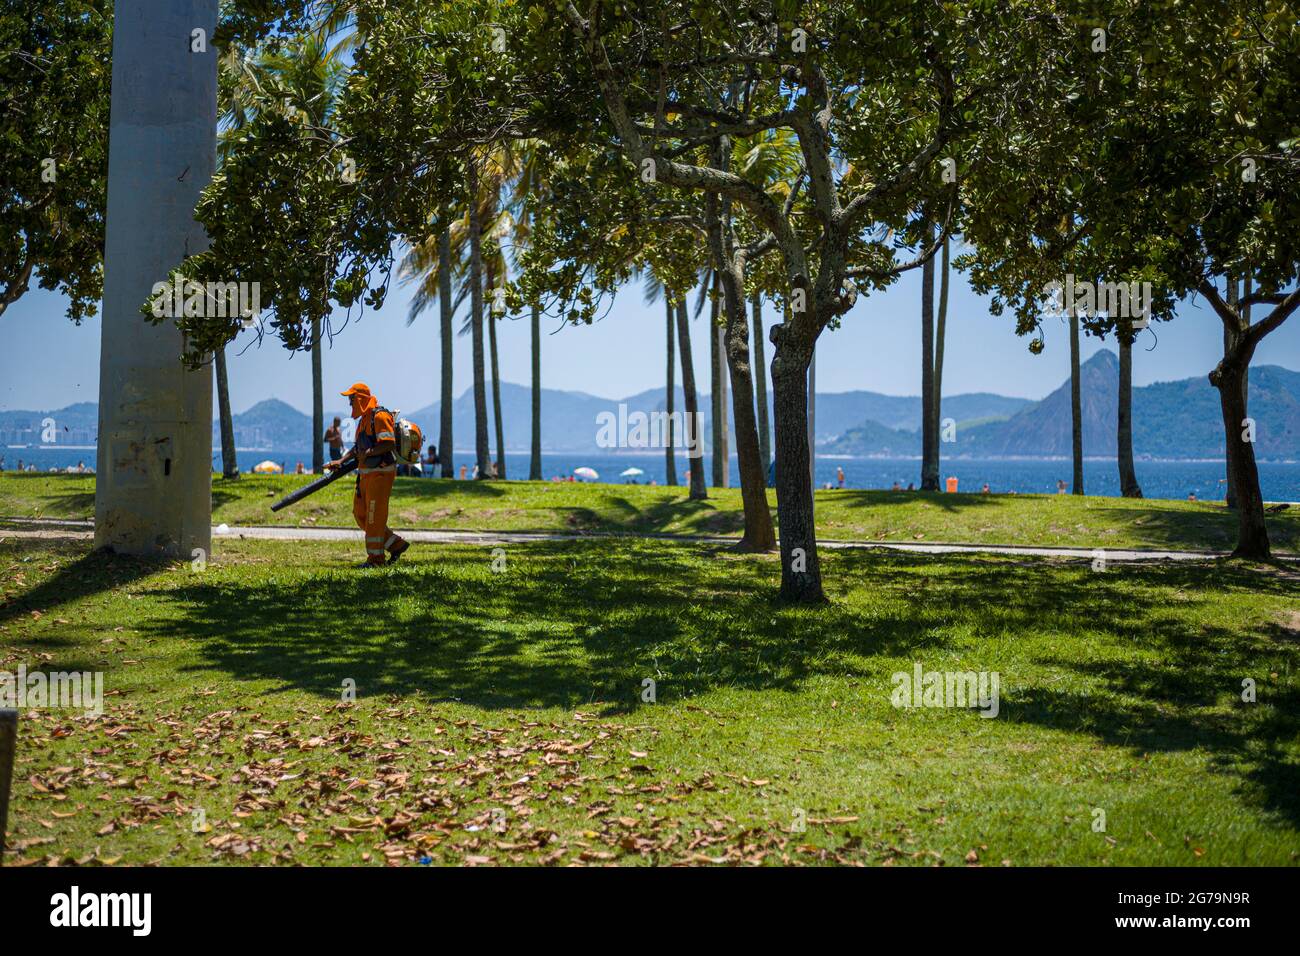 Travailleur utilisant un souffleur de feuilles à usage intensif dans le parc Flamengo - Parque Aterro do Flamengo - à Rio de Janeiro. Un vaste parc en bord de mer avec des terrains de sport, des sentiers de randonnée/cyclisme, un parc de skate et un musée d'art. Banque D'Images